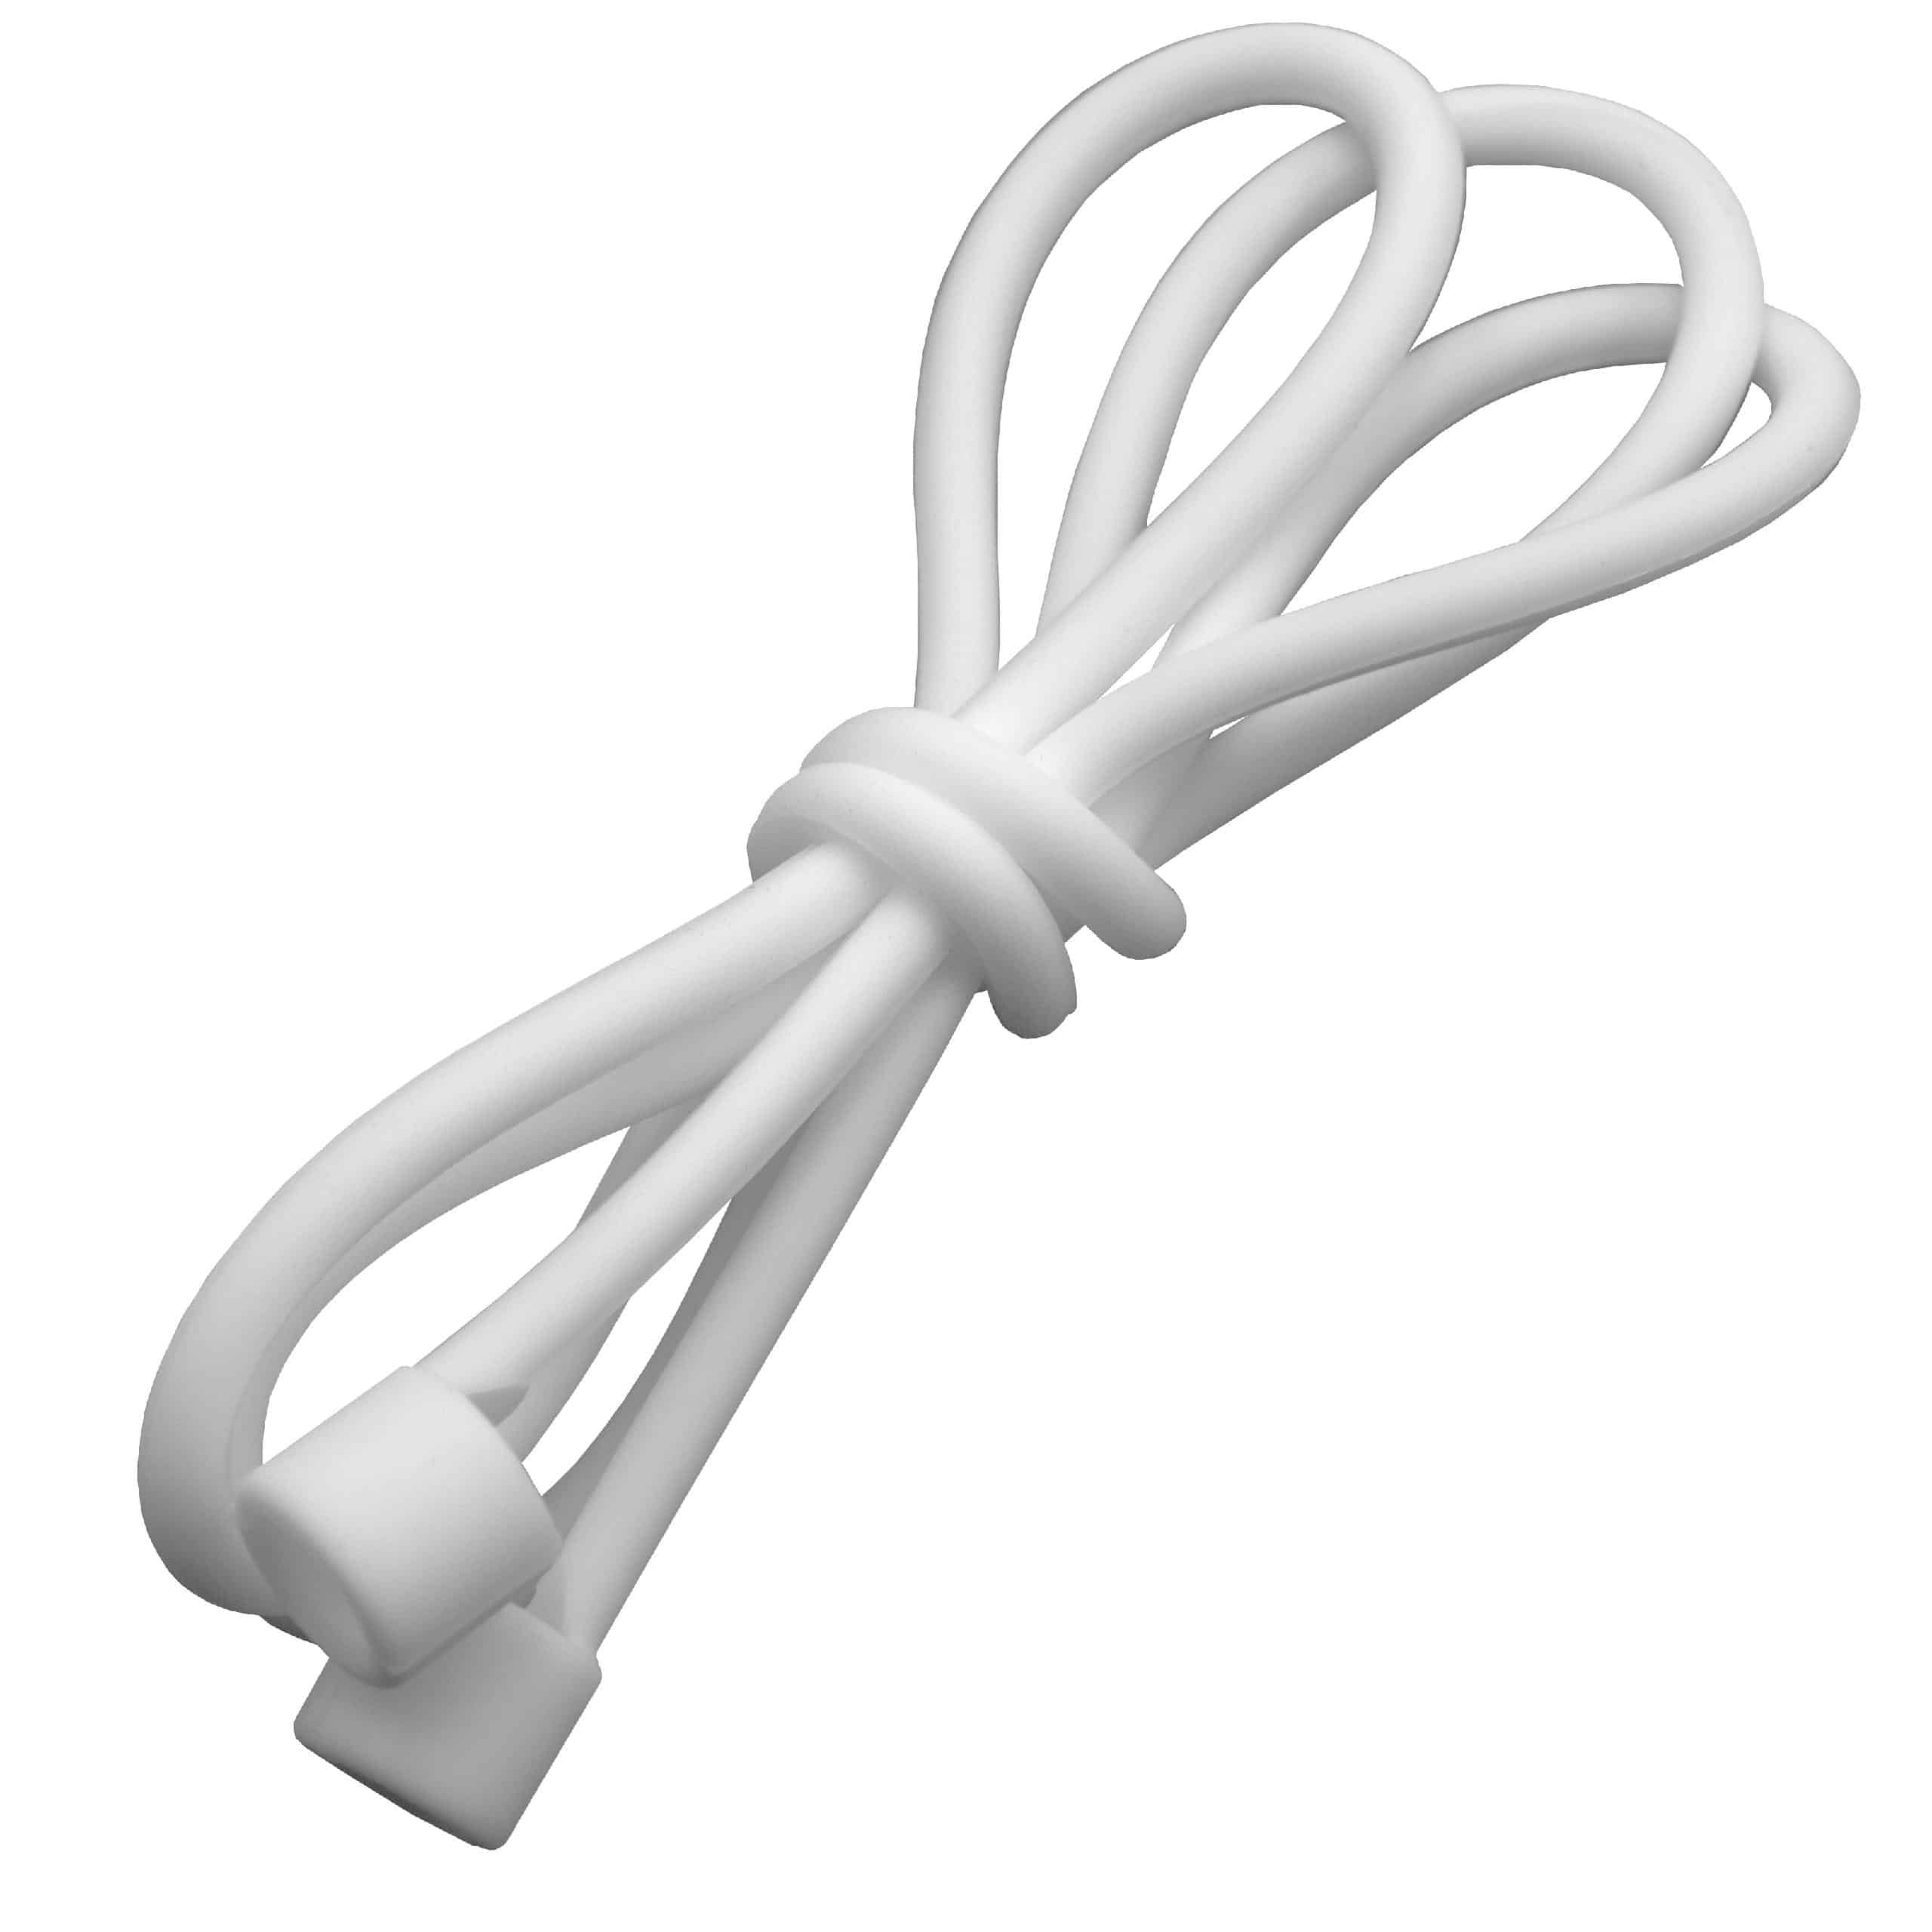 Pasek anti-lost strap na słuchawki bezprzewodowe Apple AirPods - 55 cm, biały